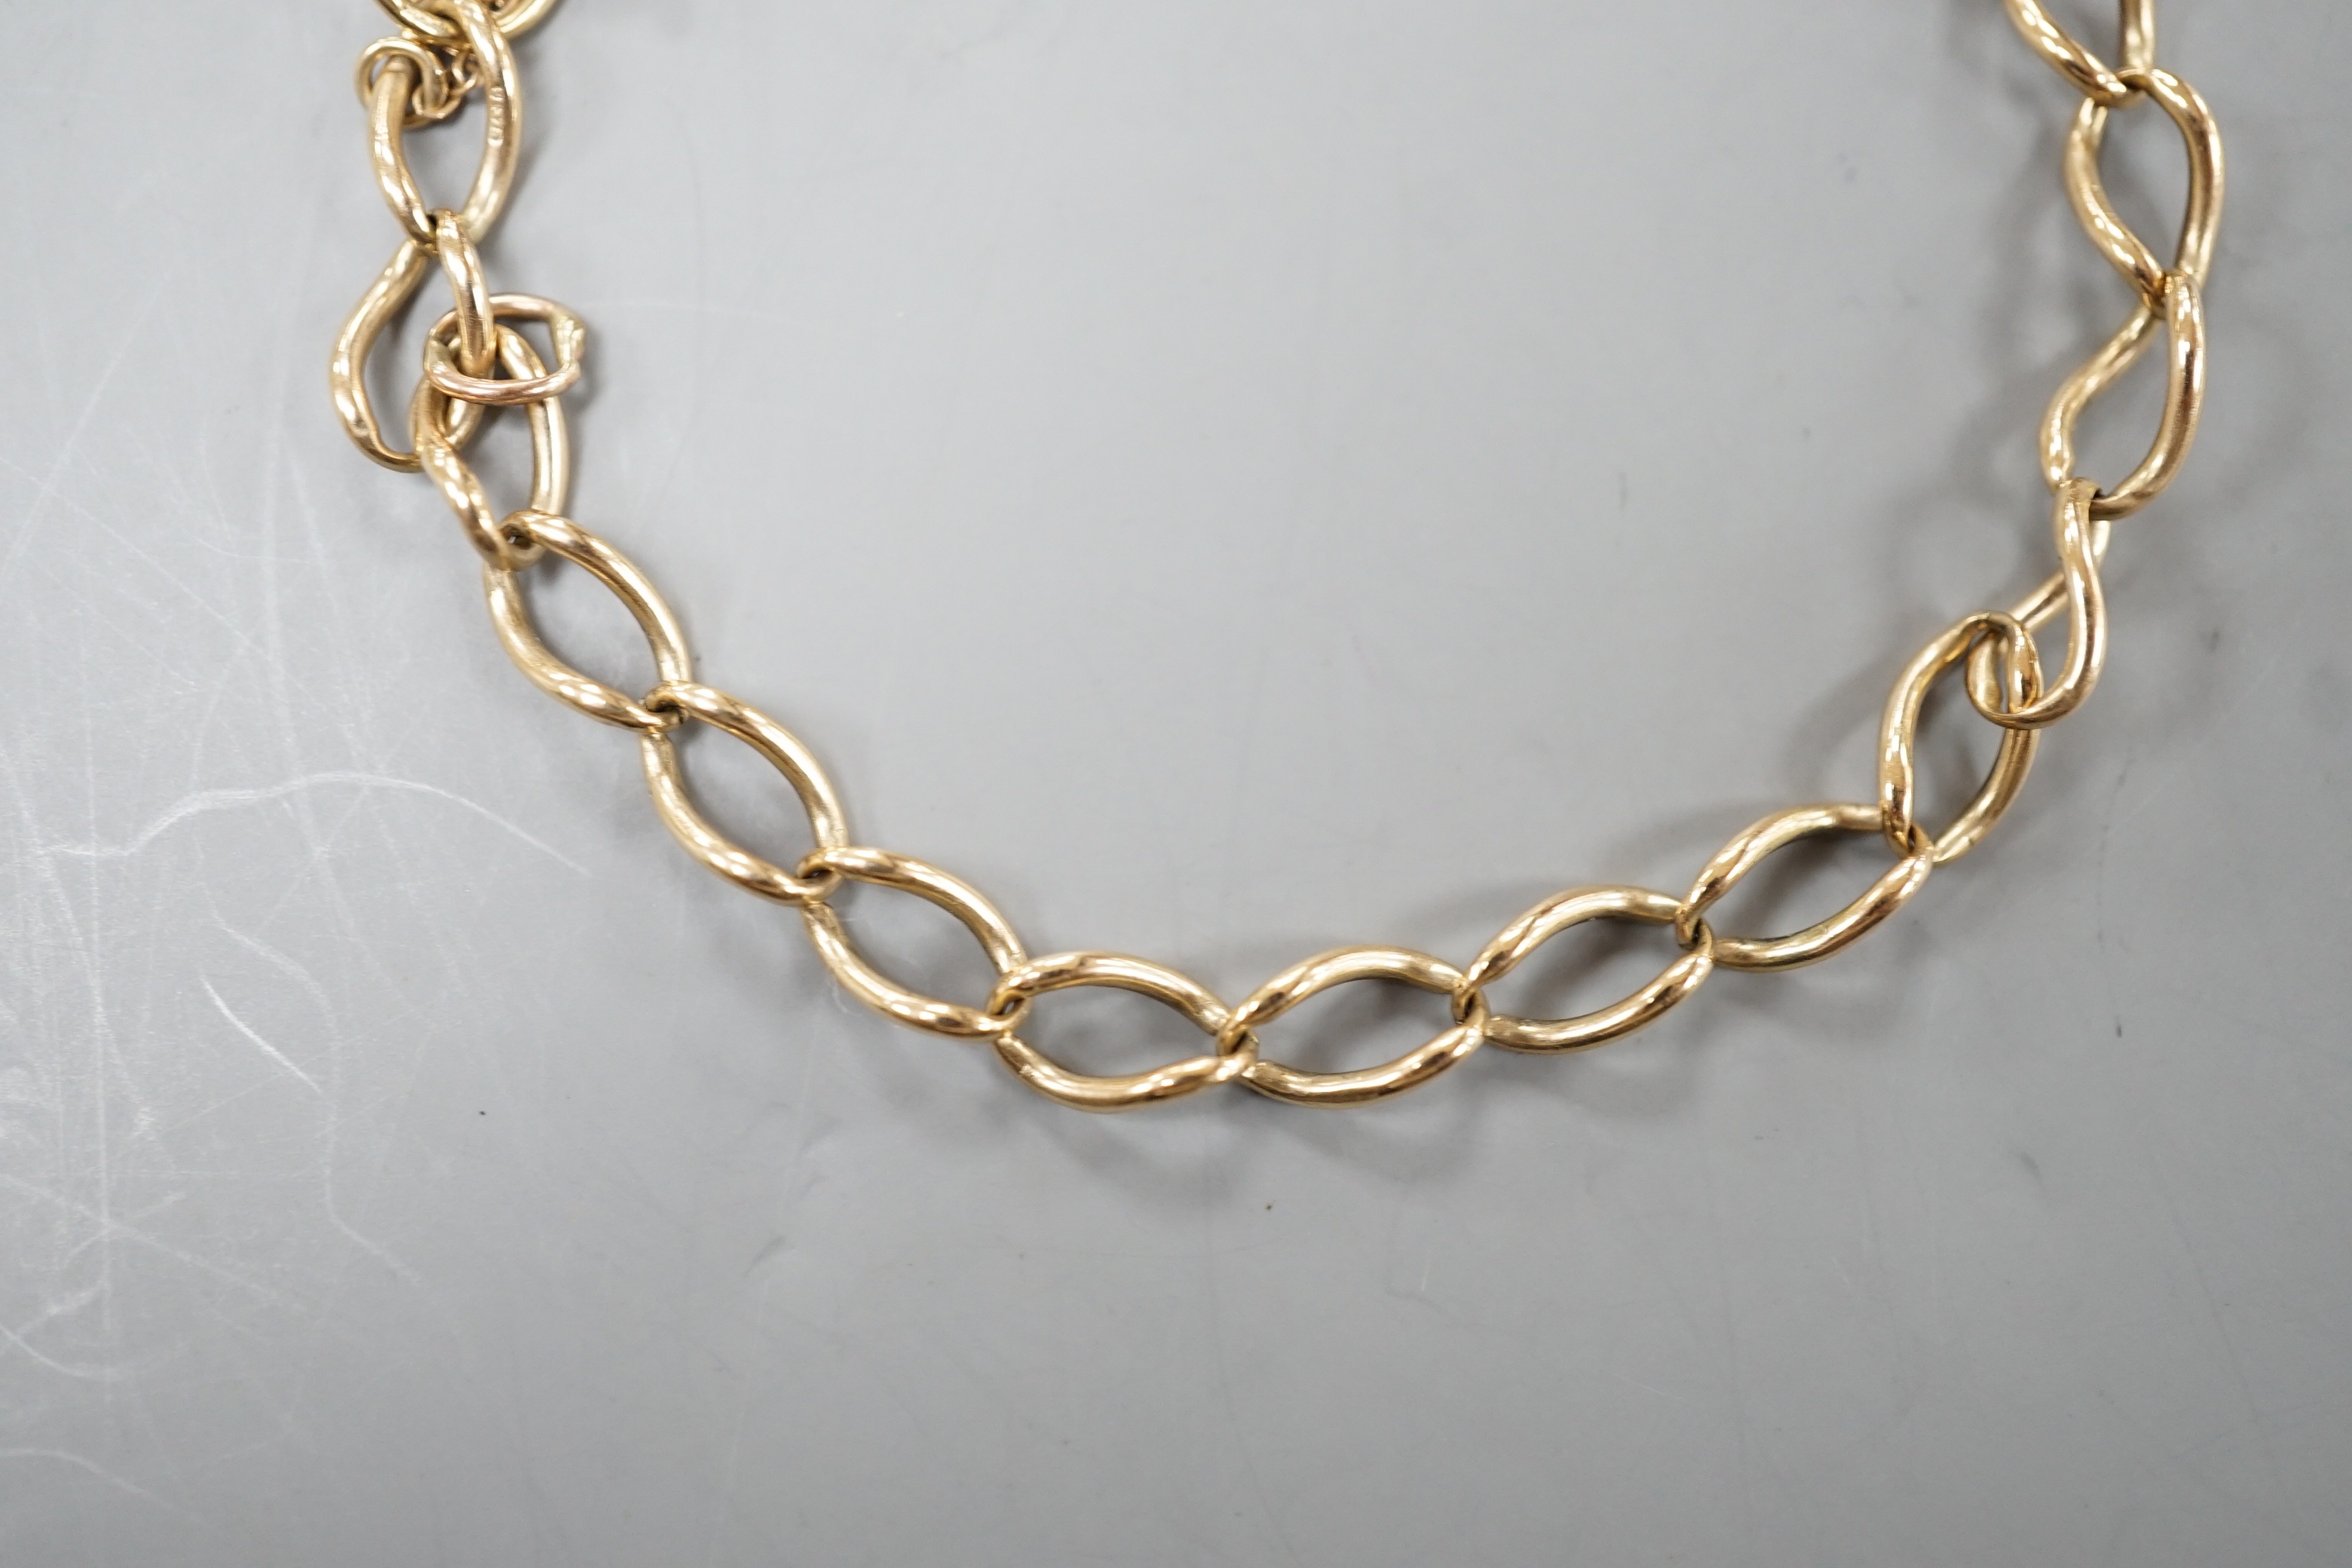 A 9ct gold oval link bracelet, 16cm, 5.2 grams.